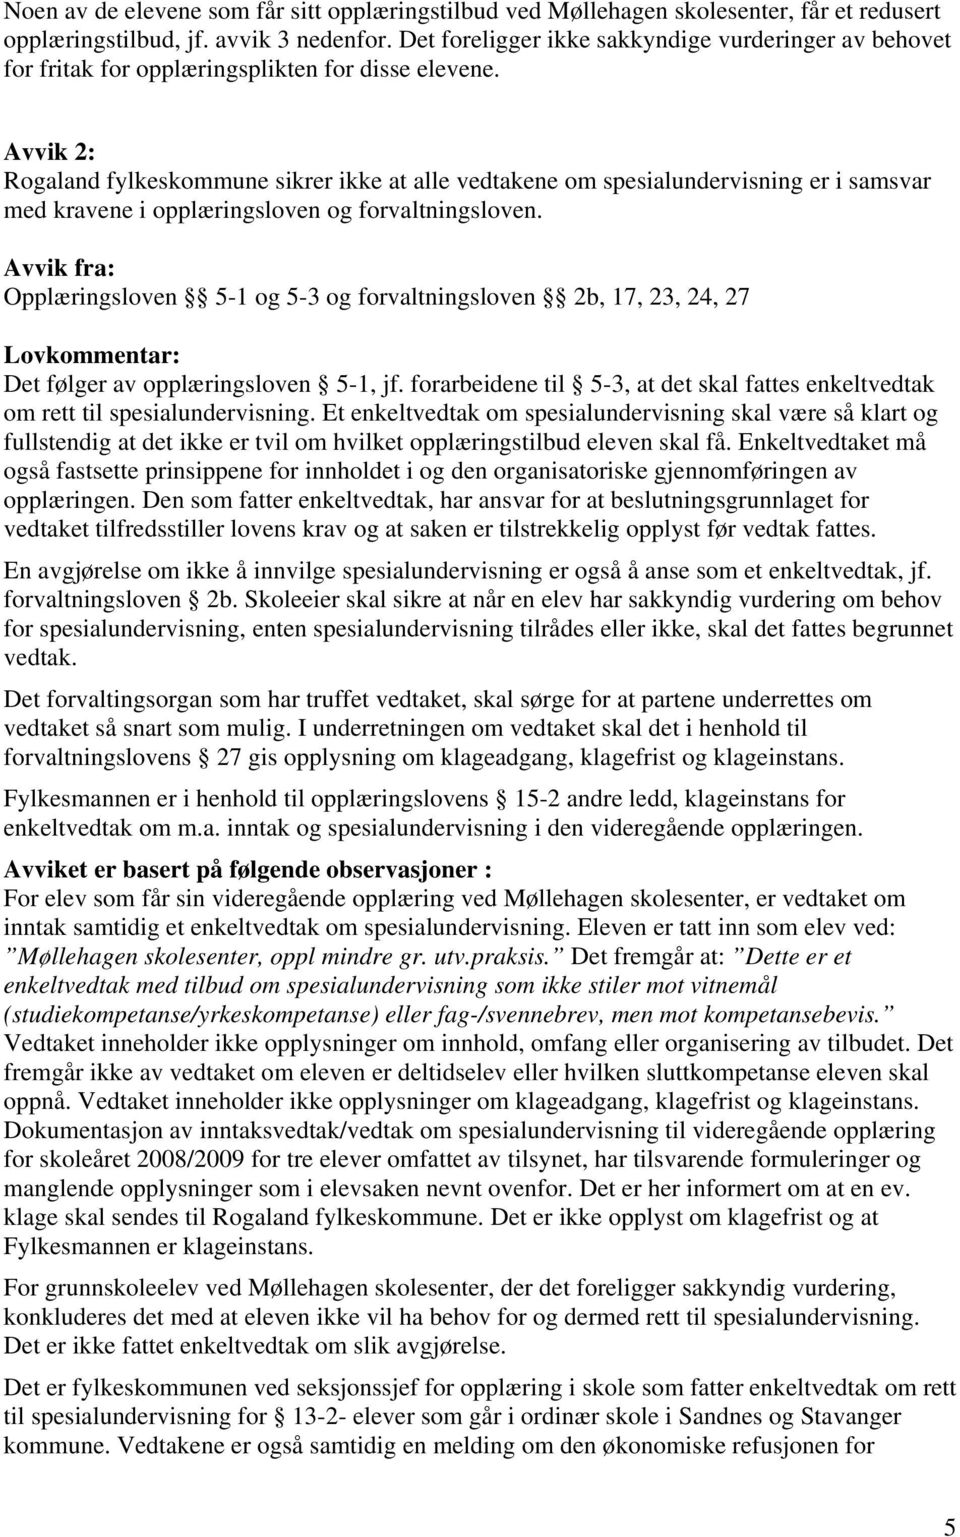 Avvik 2: Rogaland fylkeskommune sikrer ikke at alle vedtakene om spesialundervisning er i samsvar med kravene i opplæringsloven og forvaltningsloven.